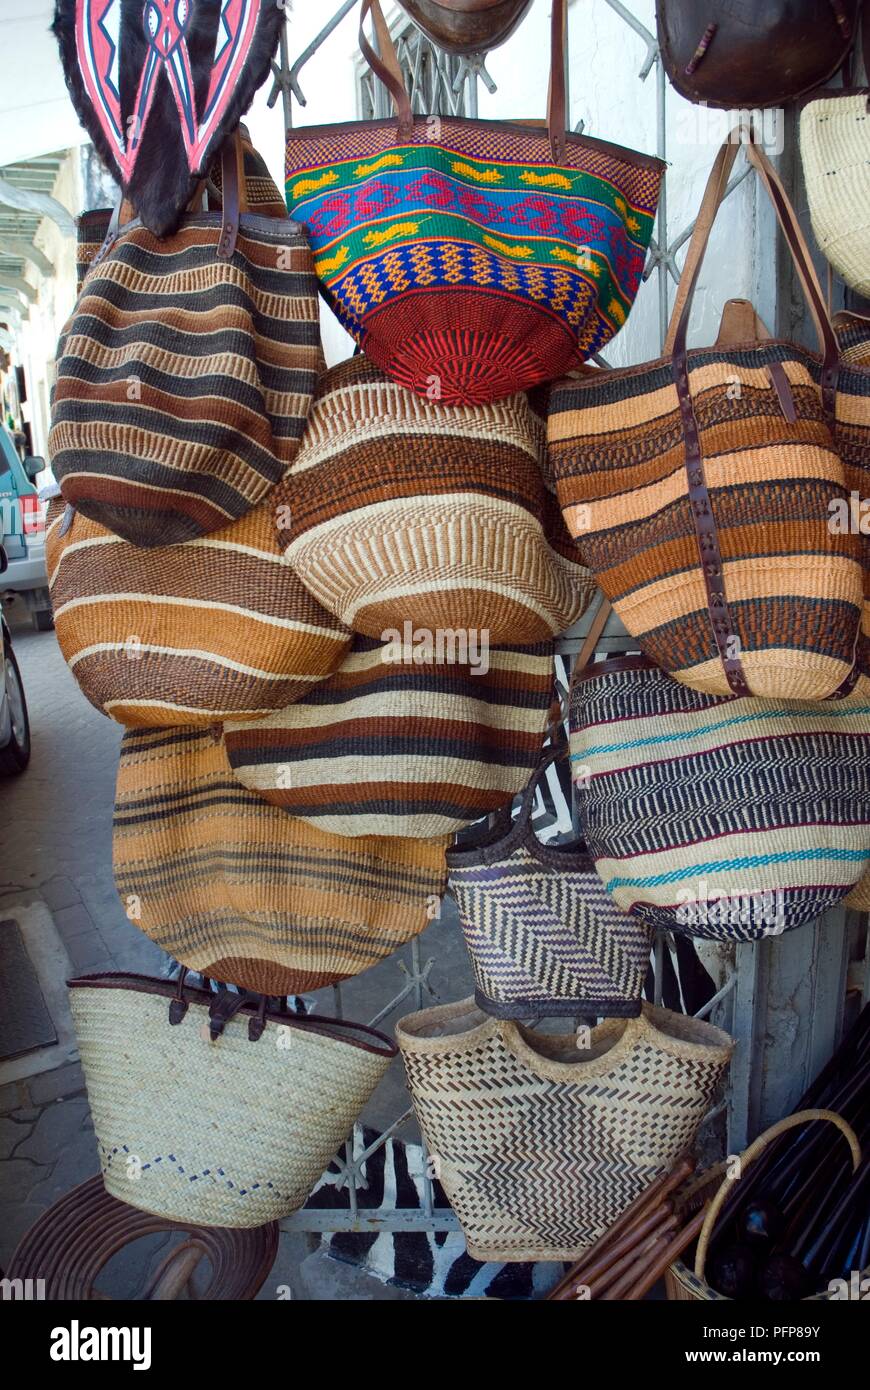 Kenya, Mombasa, bags for sale outside souvenir shop Stock Photo